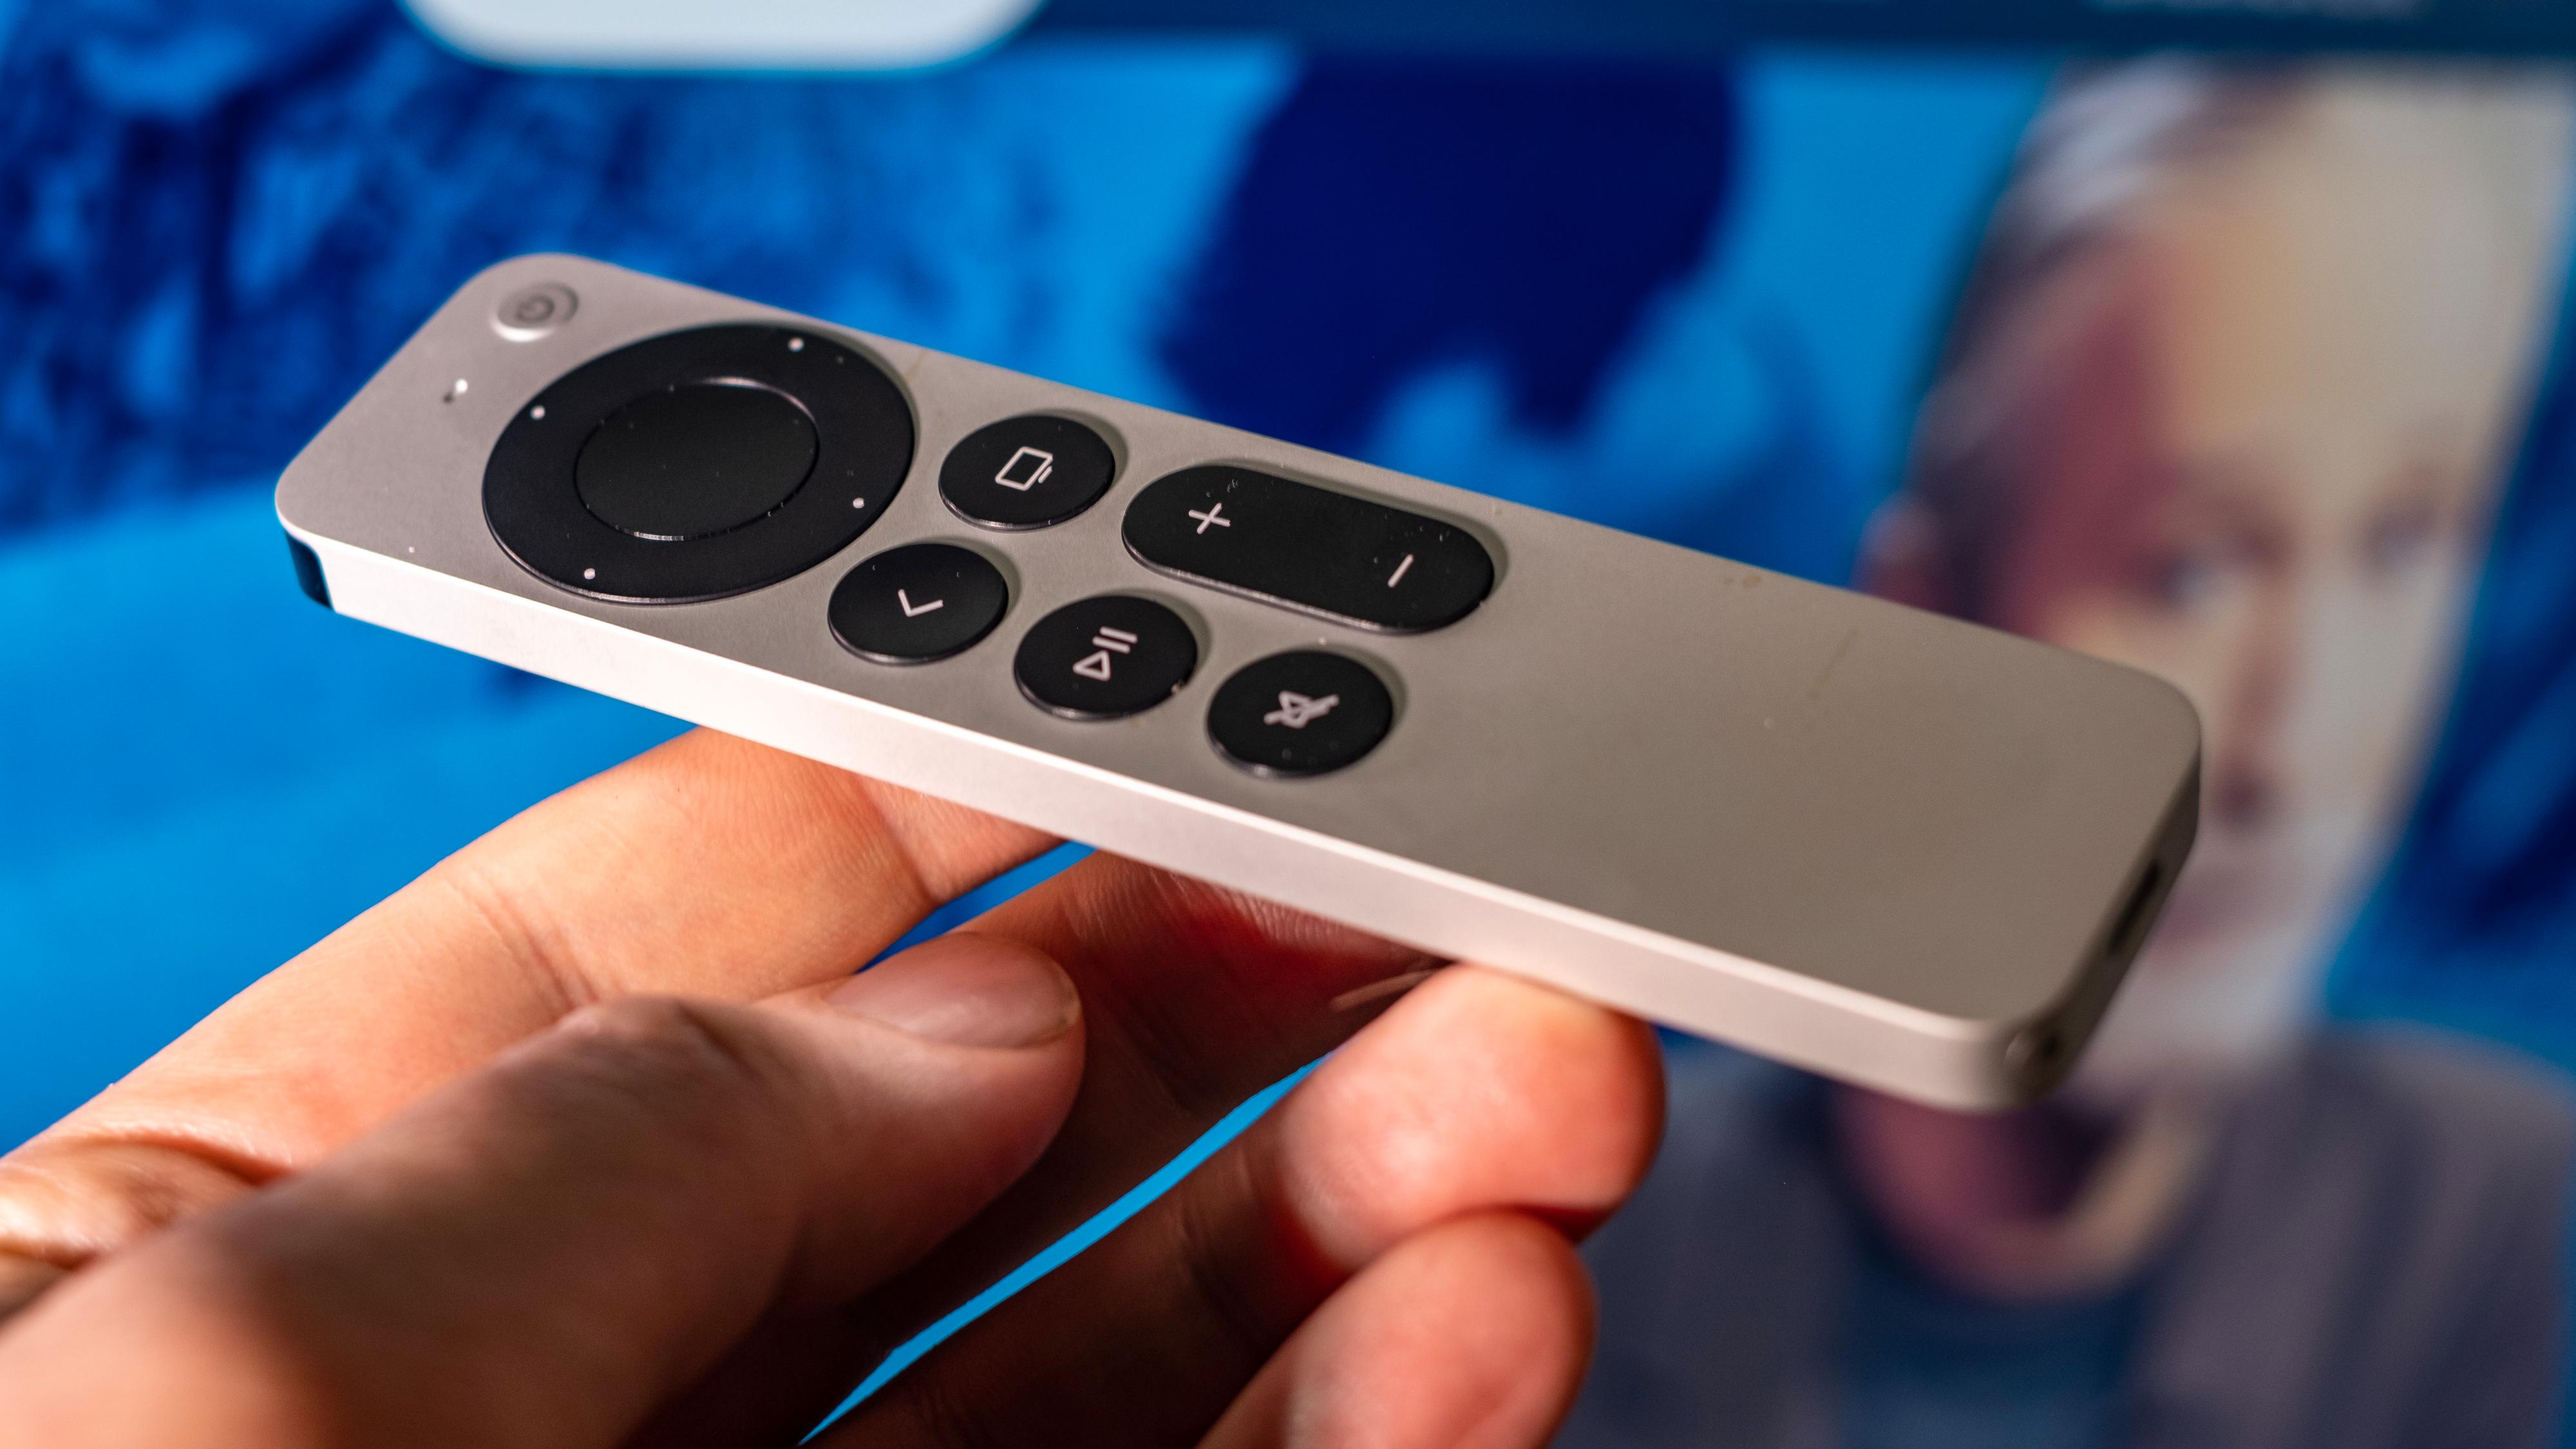 Nå kan du finne igjen Apple TV-fjernkontroller som er sporløst vekke, aka. glidd mellom sofaputene, med en iPhone.